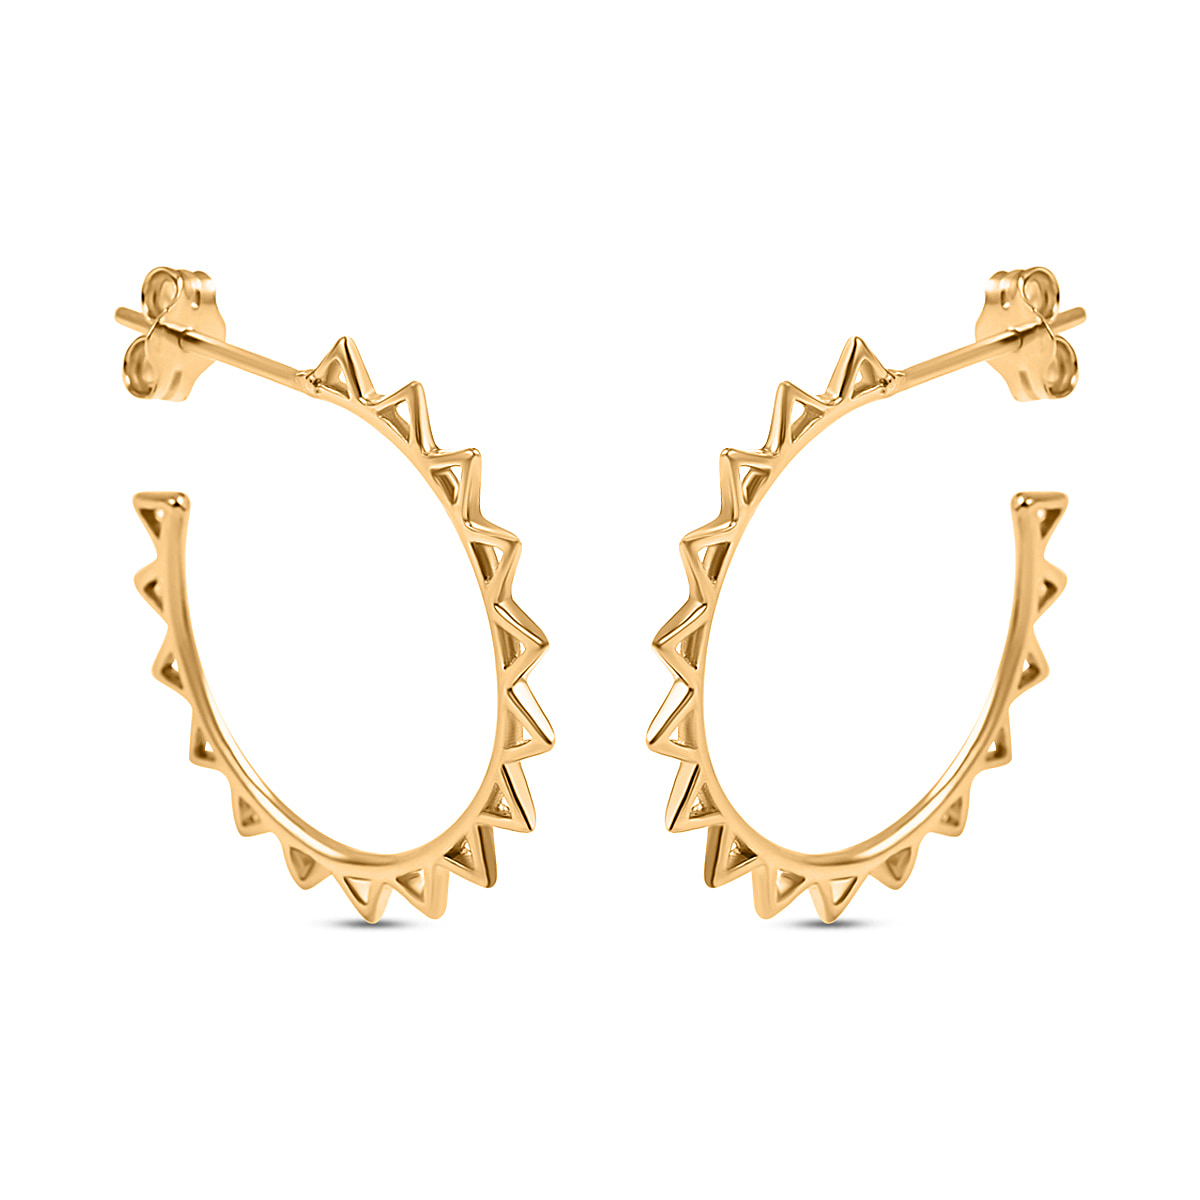 Designer Inspired Gold Overlay Sterling Silver Hoop Earrings